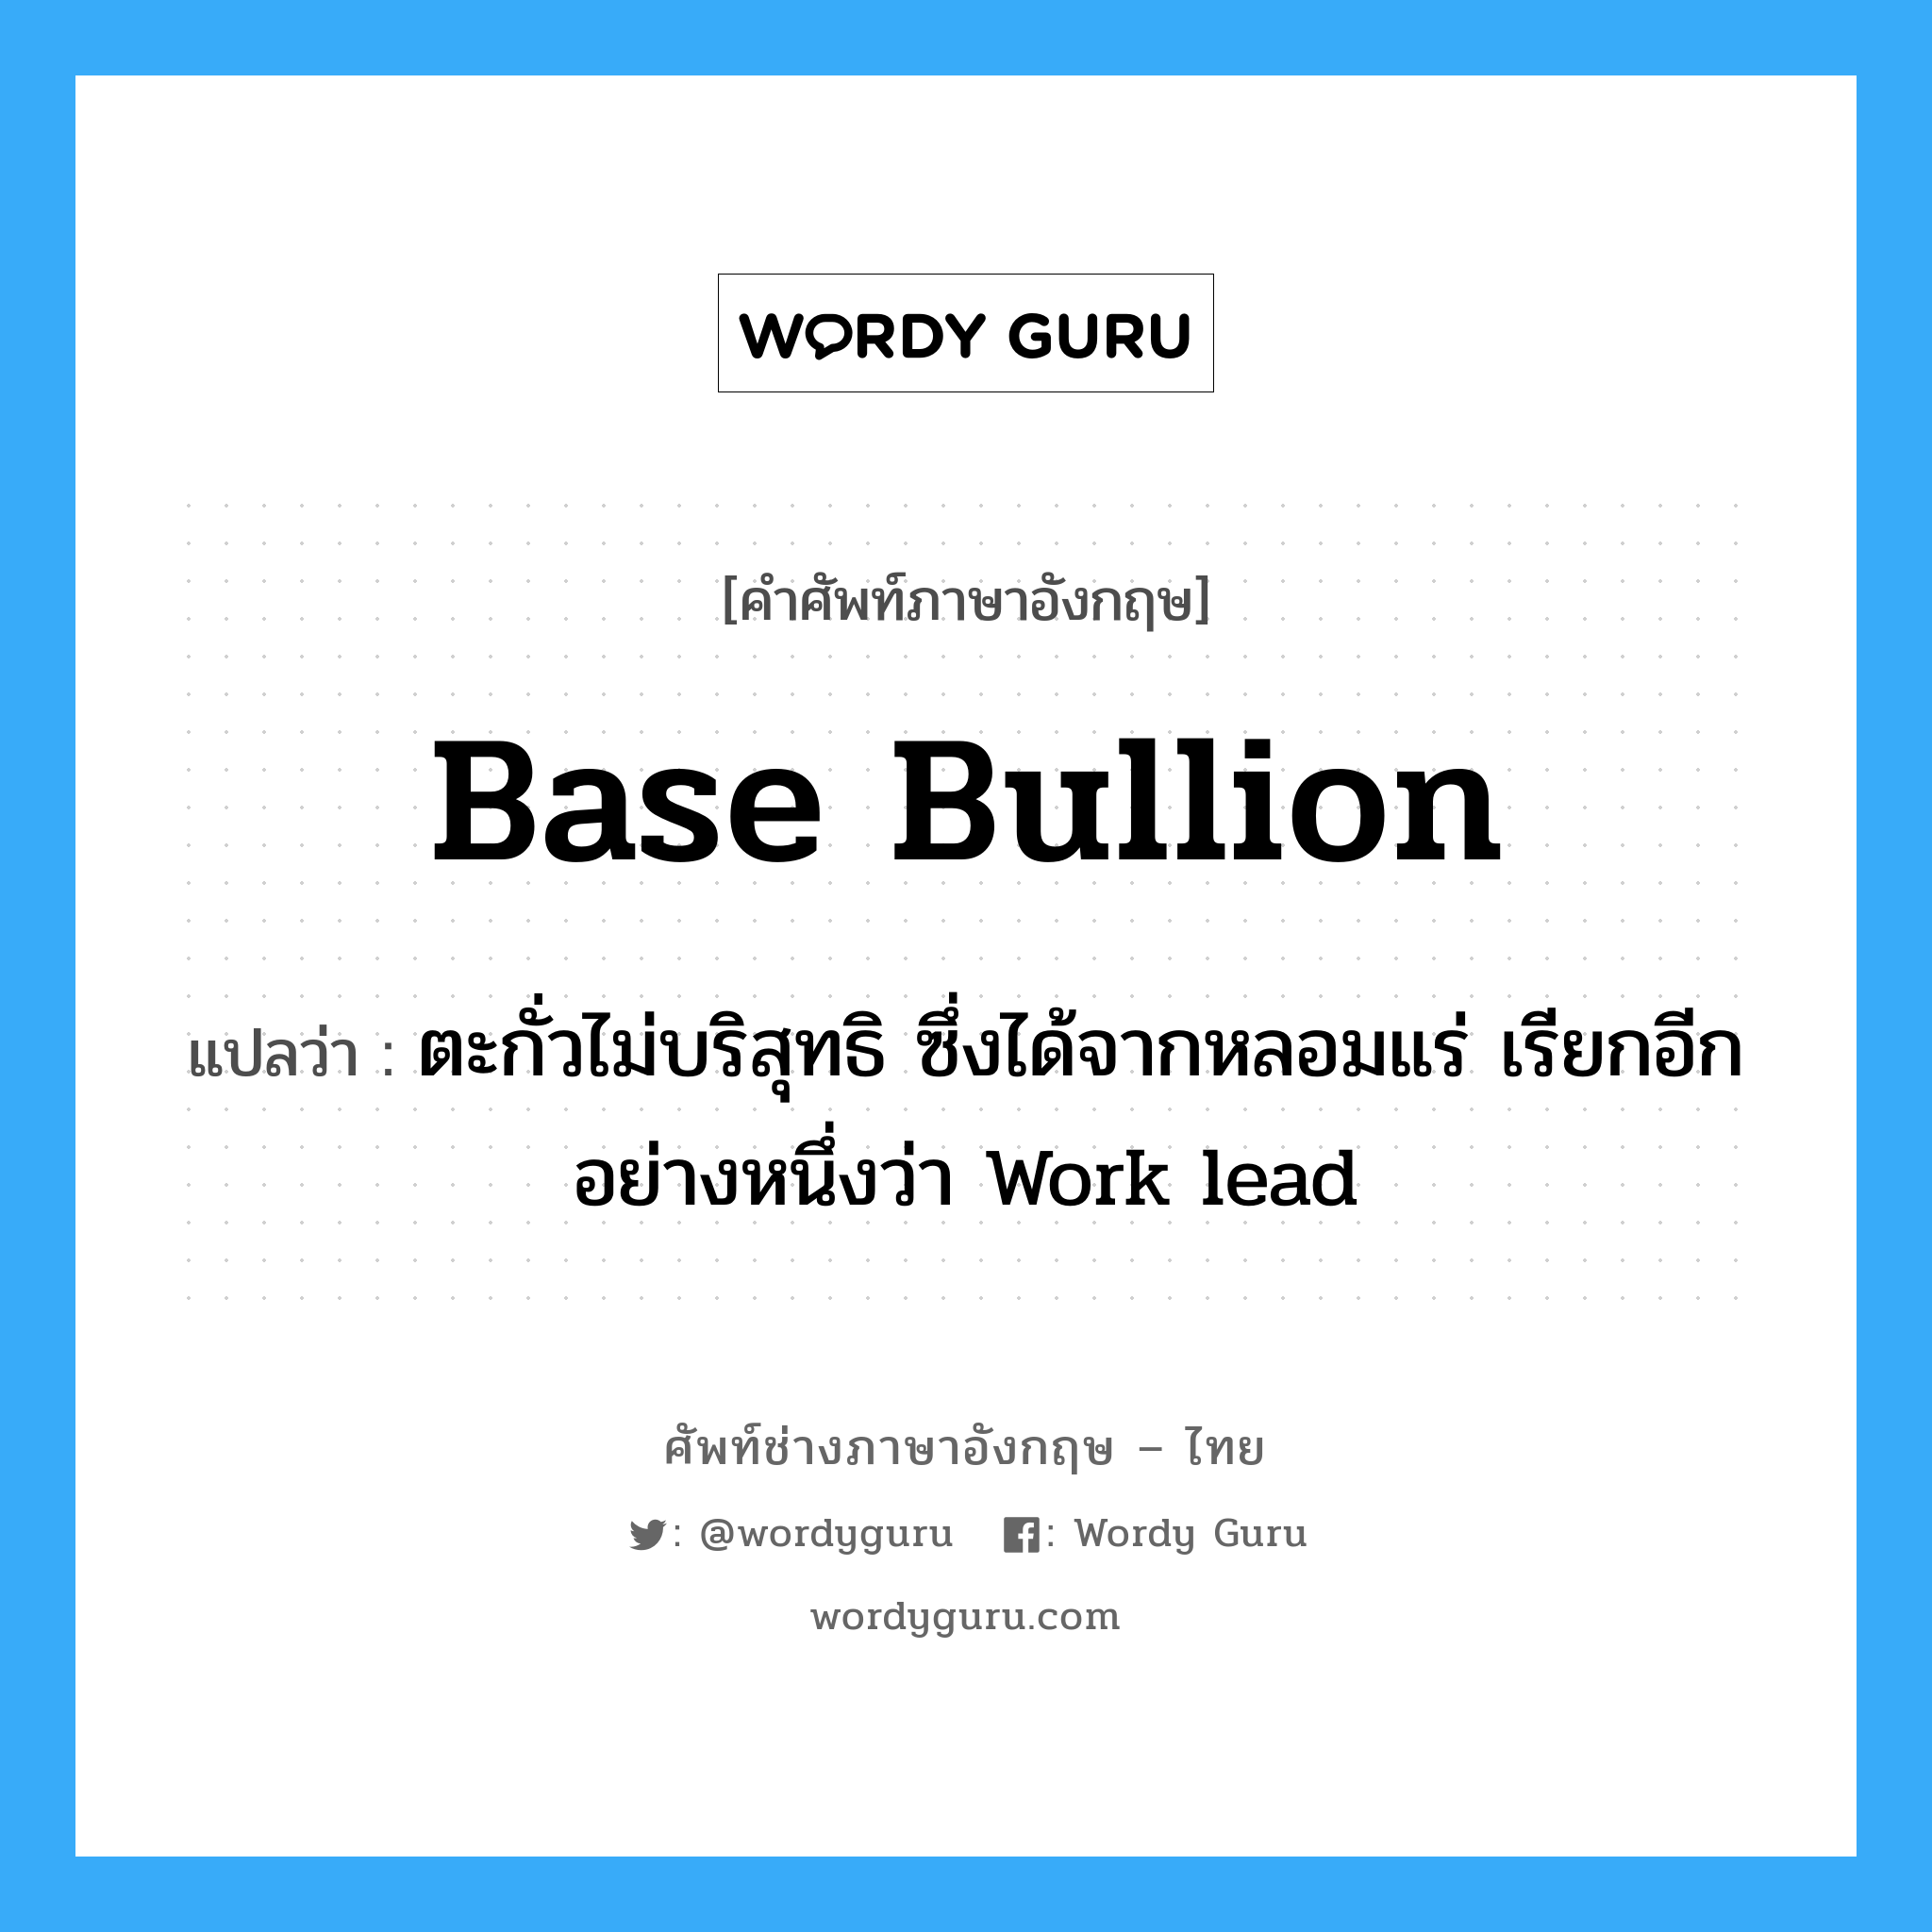 base bullion แปลว่า?, คำศัพท์ช่างภาษาอังกฤษ - ไทย base bullion คำศัพท์ภาษาอังกฤษ base bullion แปลว่า ตะกั่วไม่บริสุทธิ ซึ่งได้จากหลอมแร่ เรียกอีกอย่างหนึ่งว่า Work lead